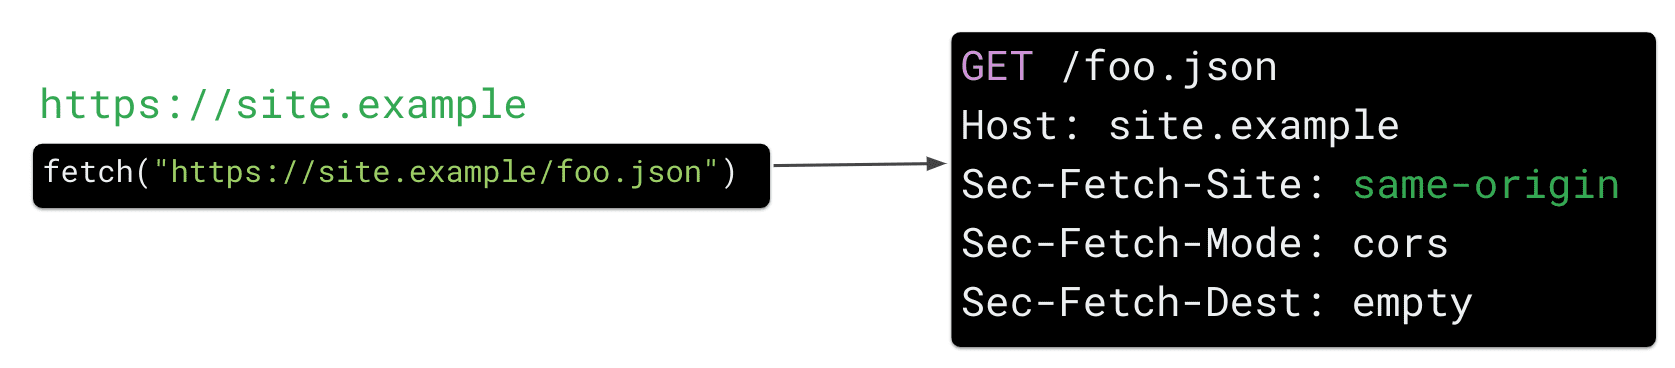 Запрос на выборку от https://site.example для ресурса https://site.example/foo.json в JavaScript заставляет браузер отправлять заголовок HTTP-запроса «Sec Fetch-Site: Same-origin».